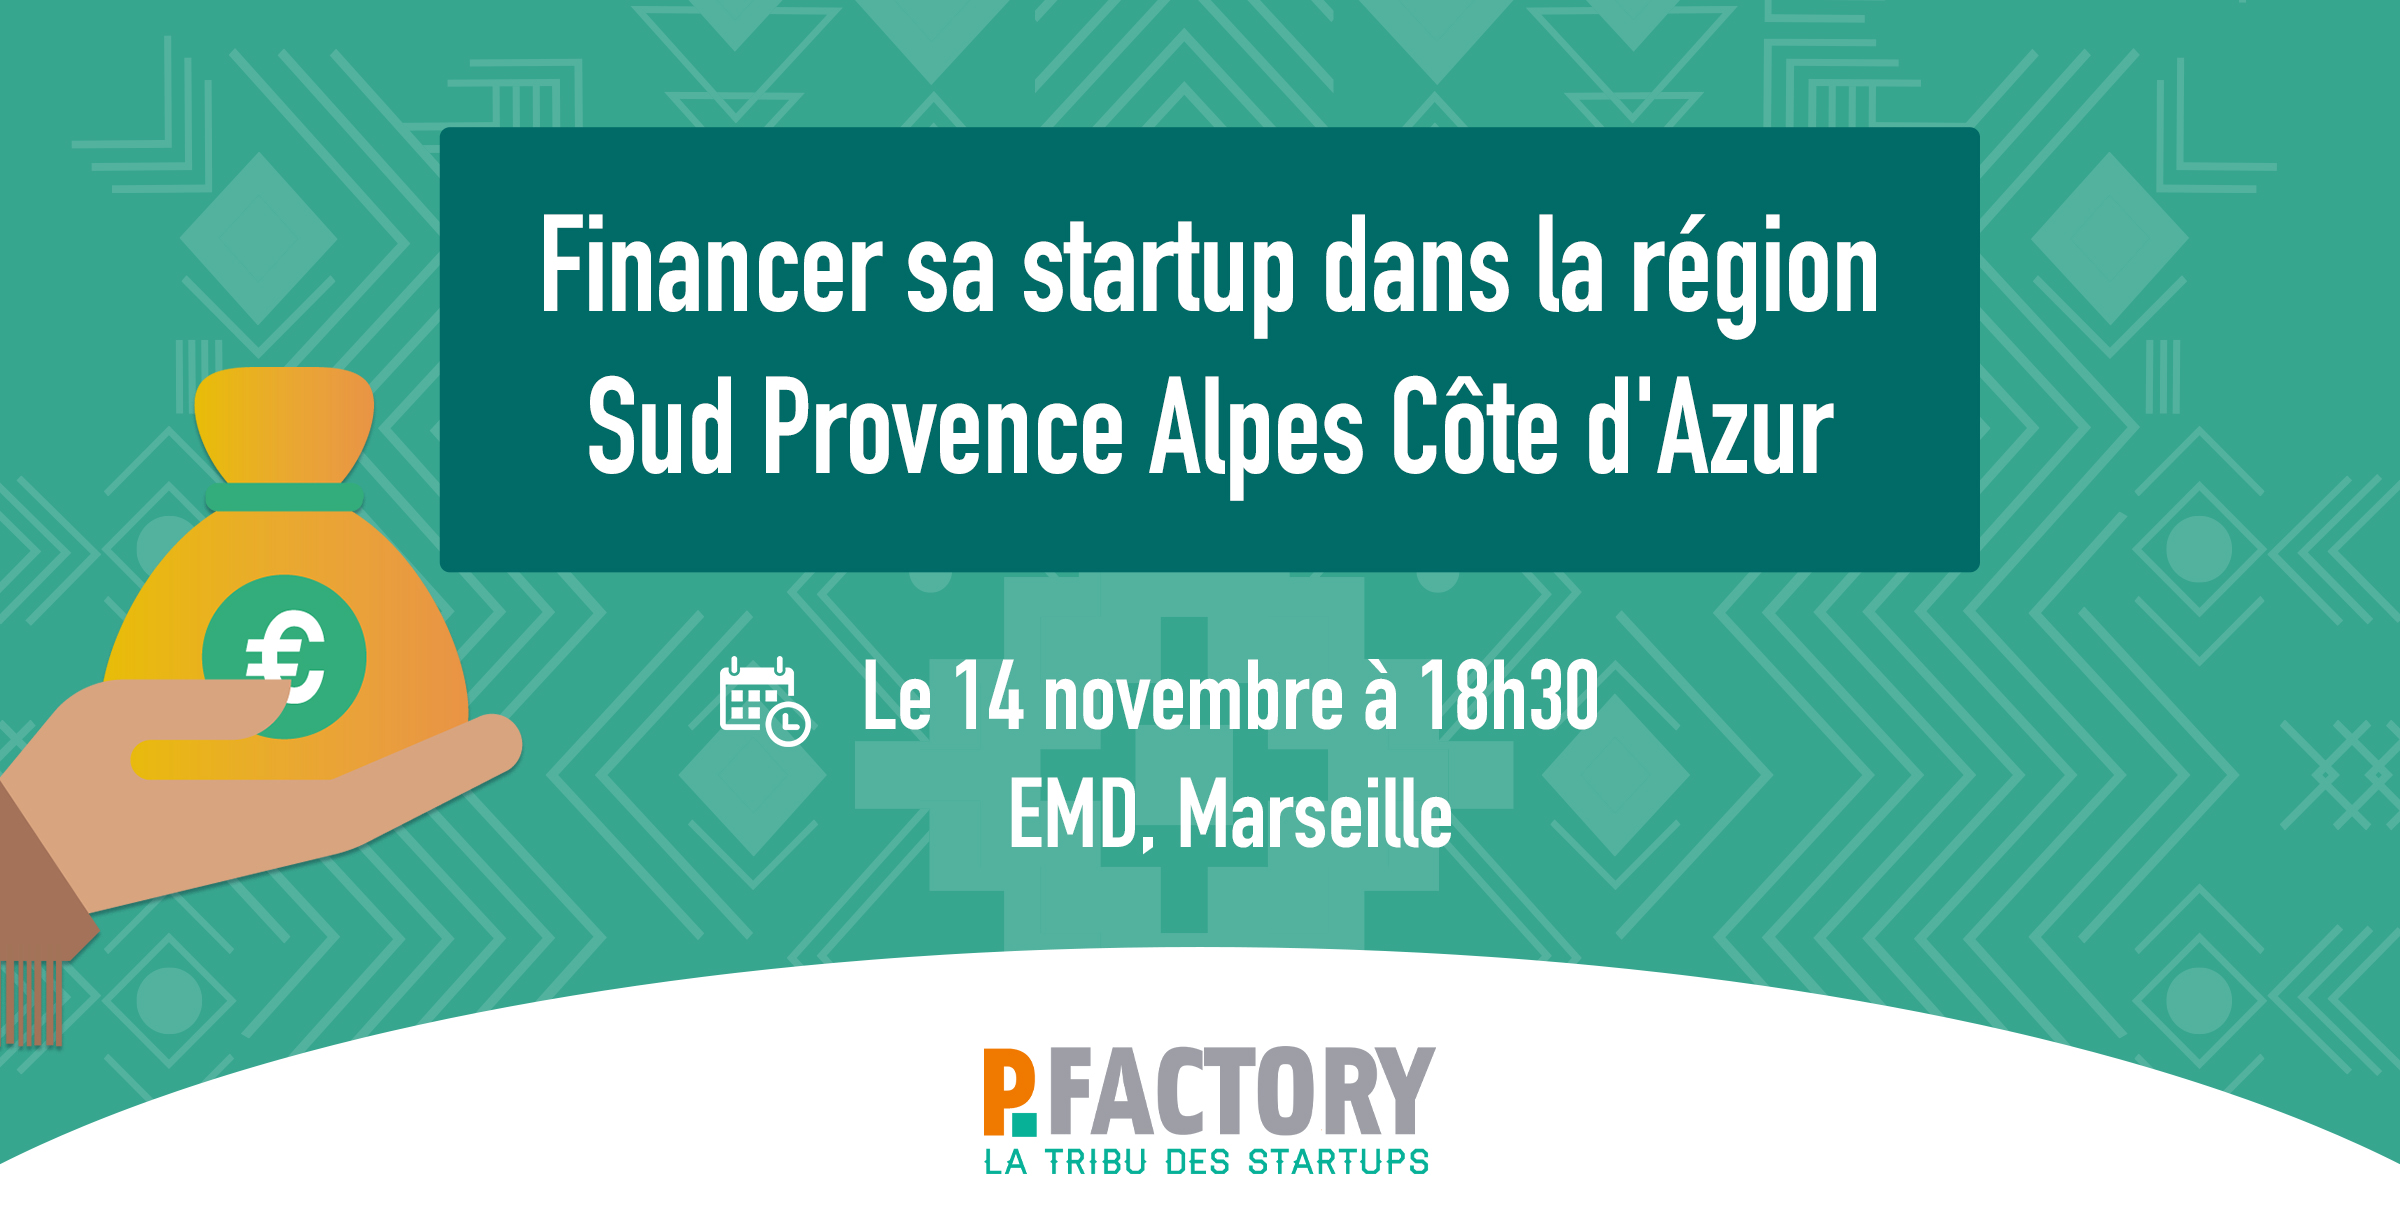 Financer sa startup dans la région Sud Provence Alpes Côte d’Azur !